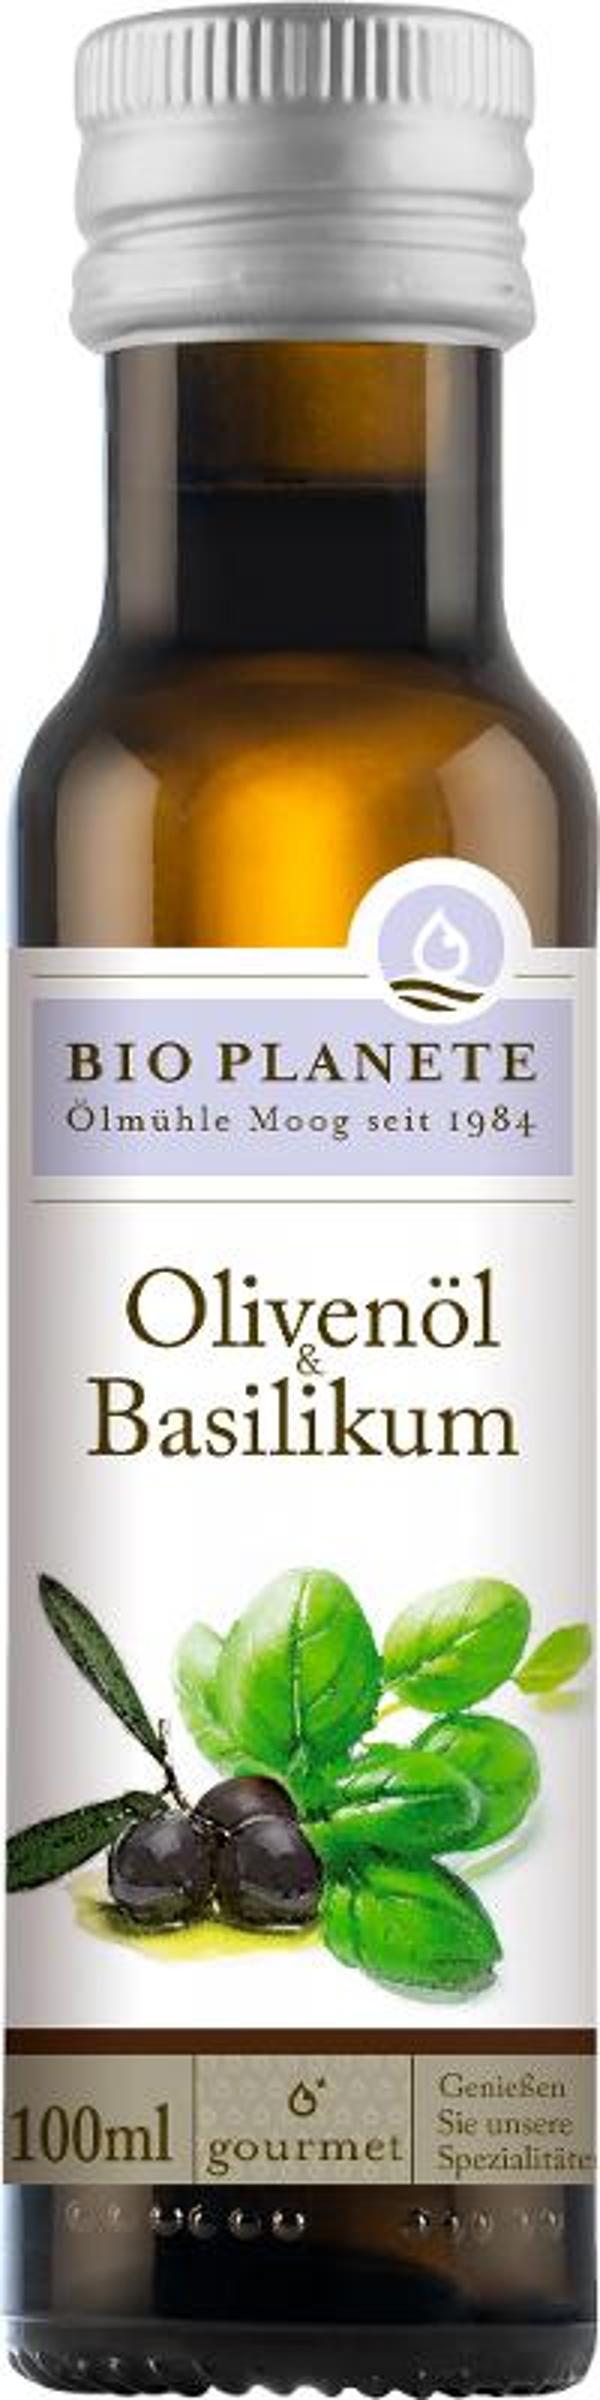 Produktfoto zu Olivenöl mit Basilikum von Bio Planete